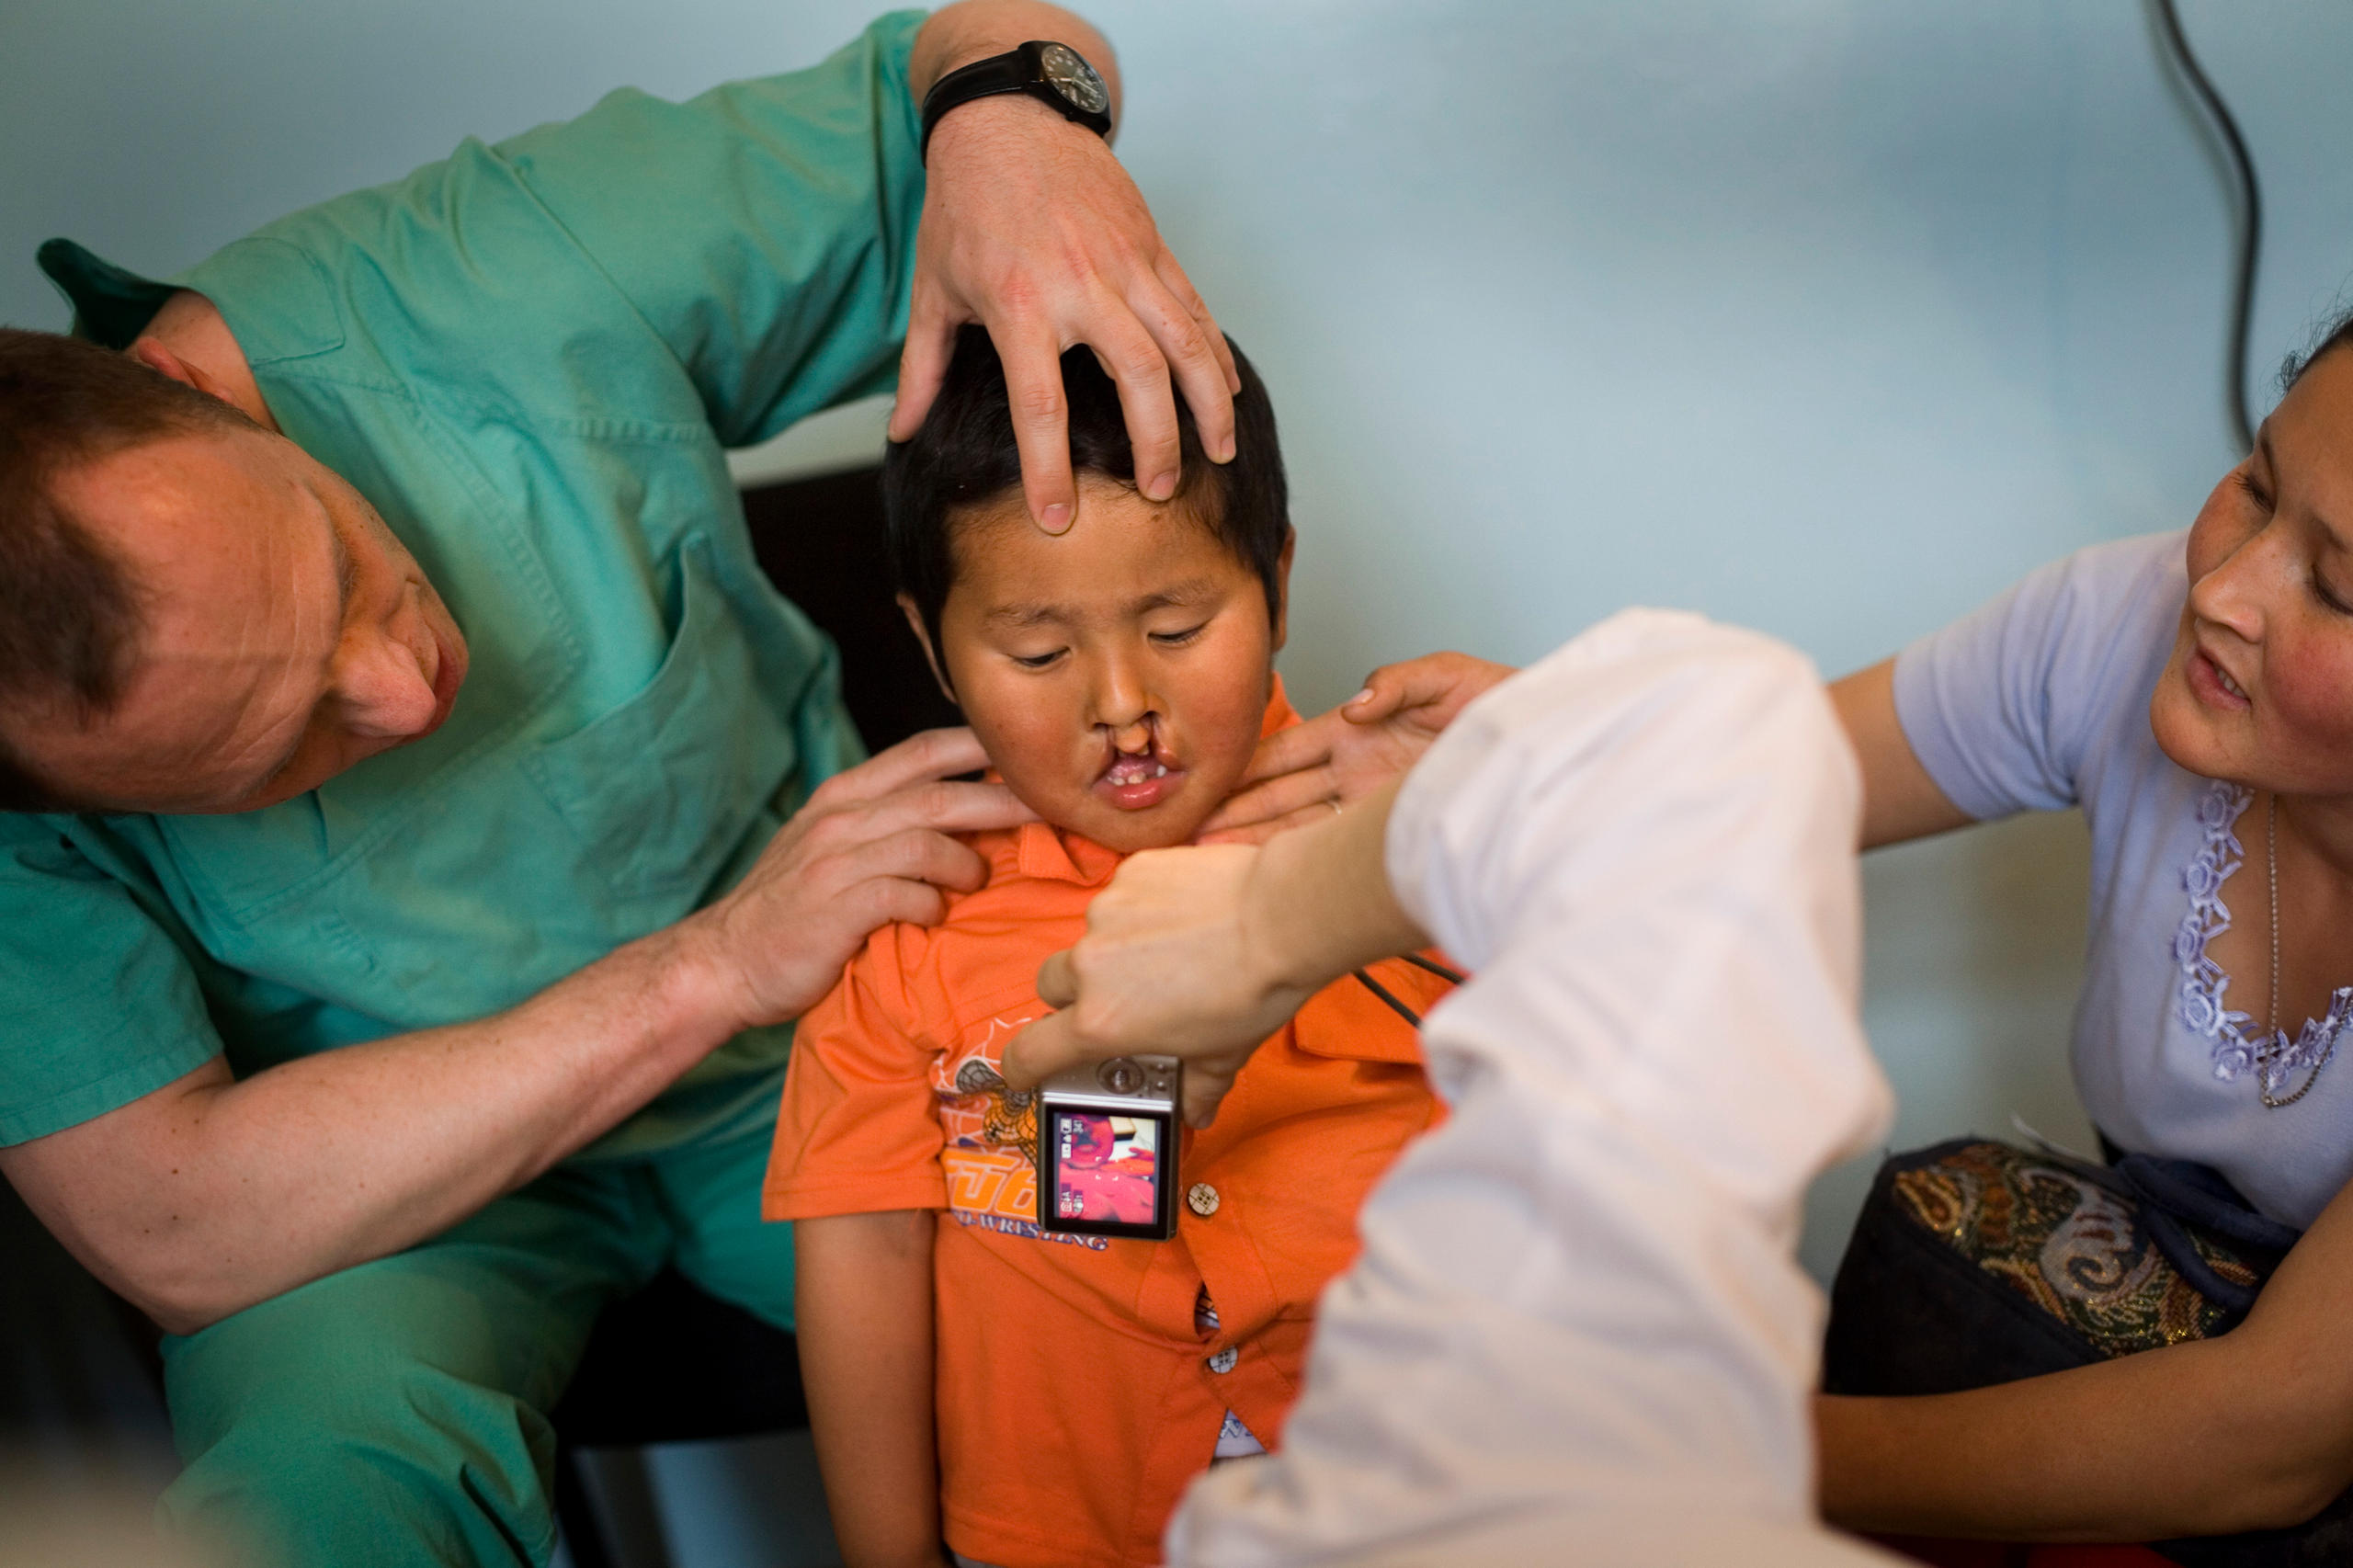 Epuipe médicale autour d un enfant avec un bec-de-lièvre